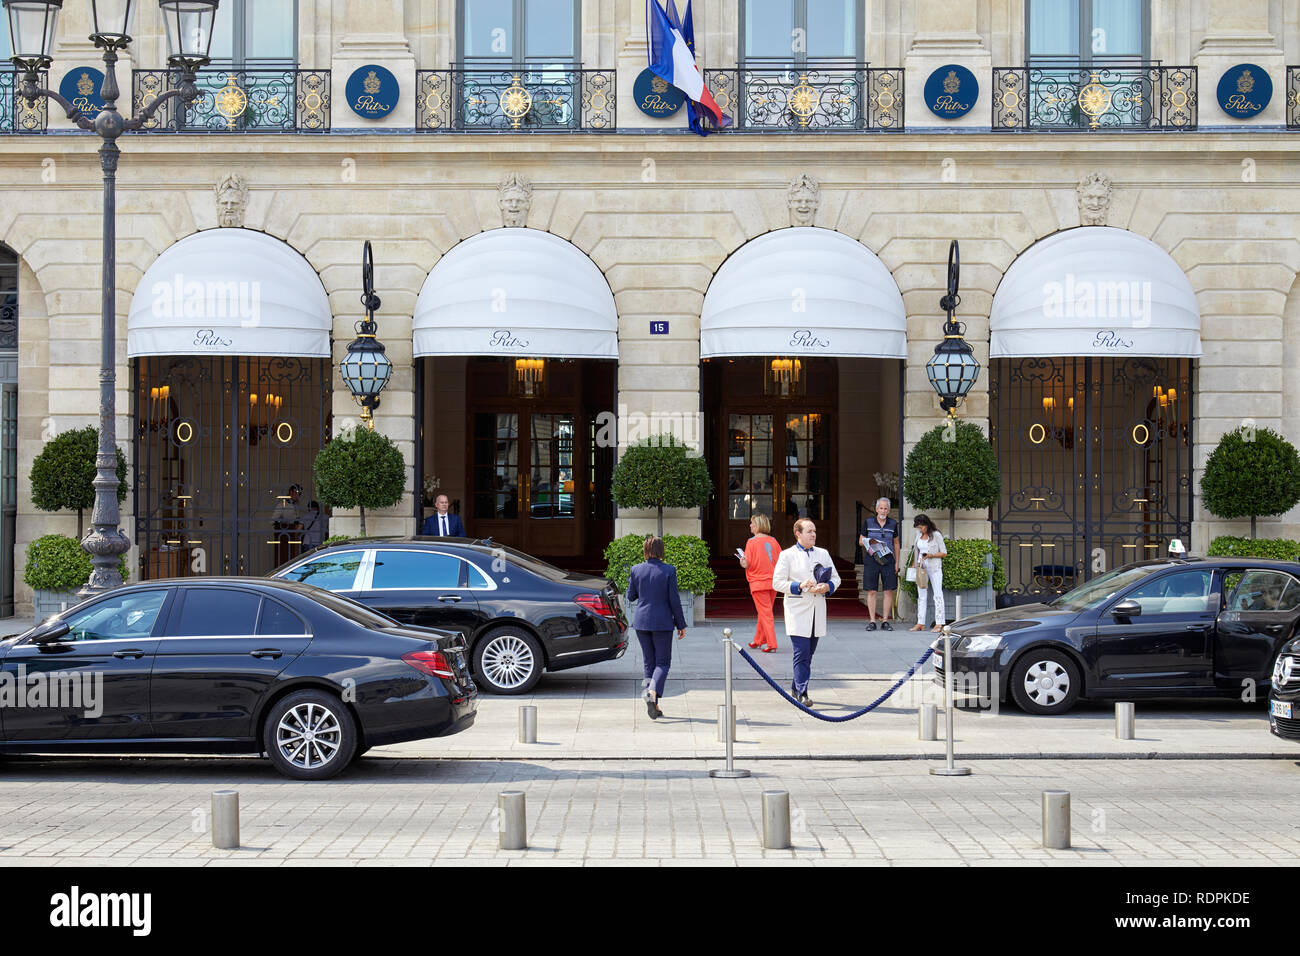 PARIS, FRANCE - 07 juillet 2018 : Ritz Hôtel de luxe de la place Vendôme à Paris, les gens et les voitures dans un jour d'été ensoleillé Banque D'Images